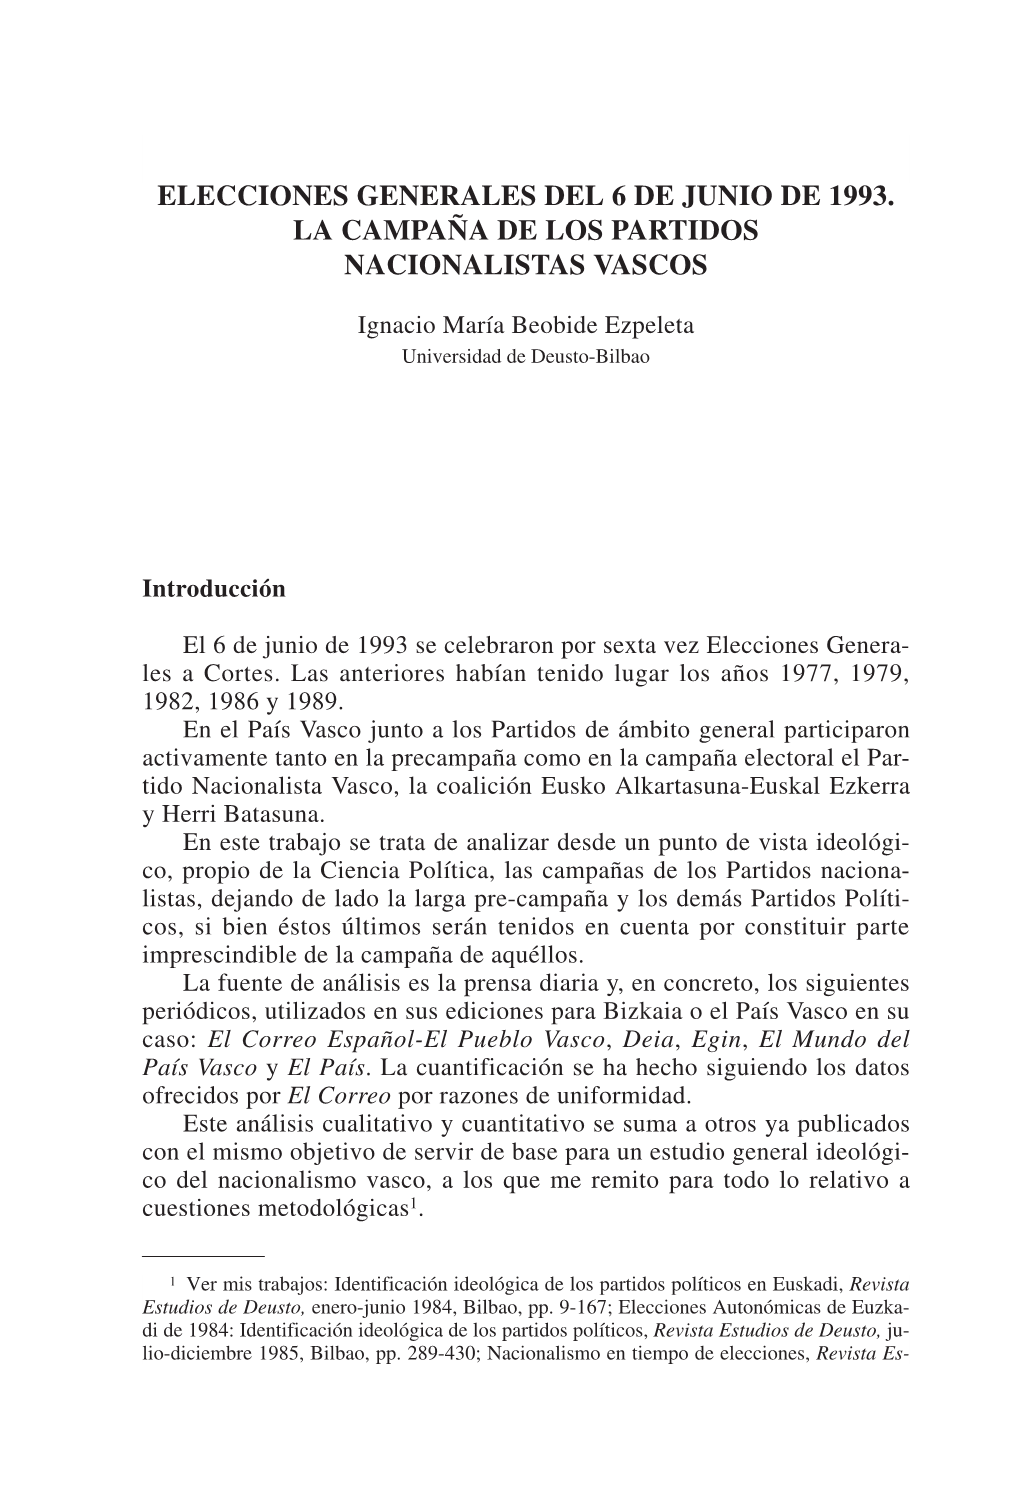 Estudios De Deusto Vol. 41/2 Julio-Diciembre 1993